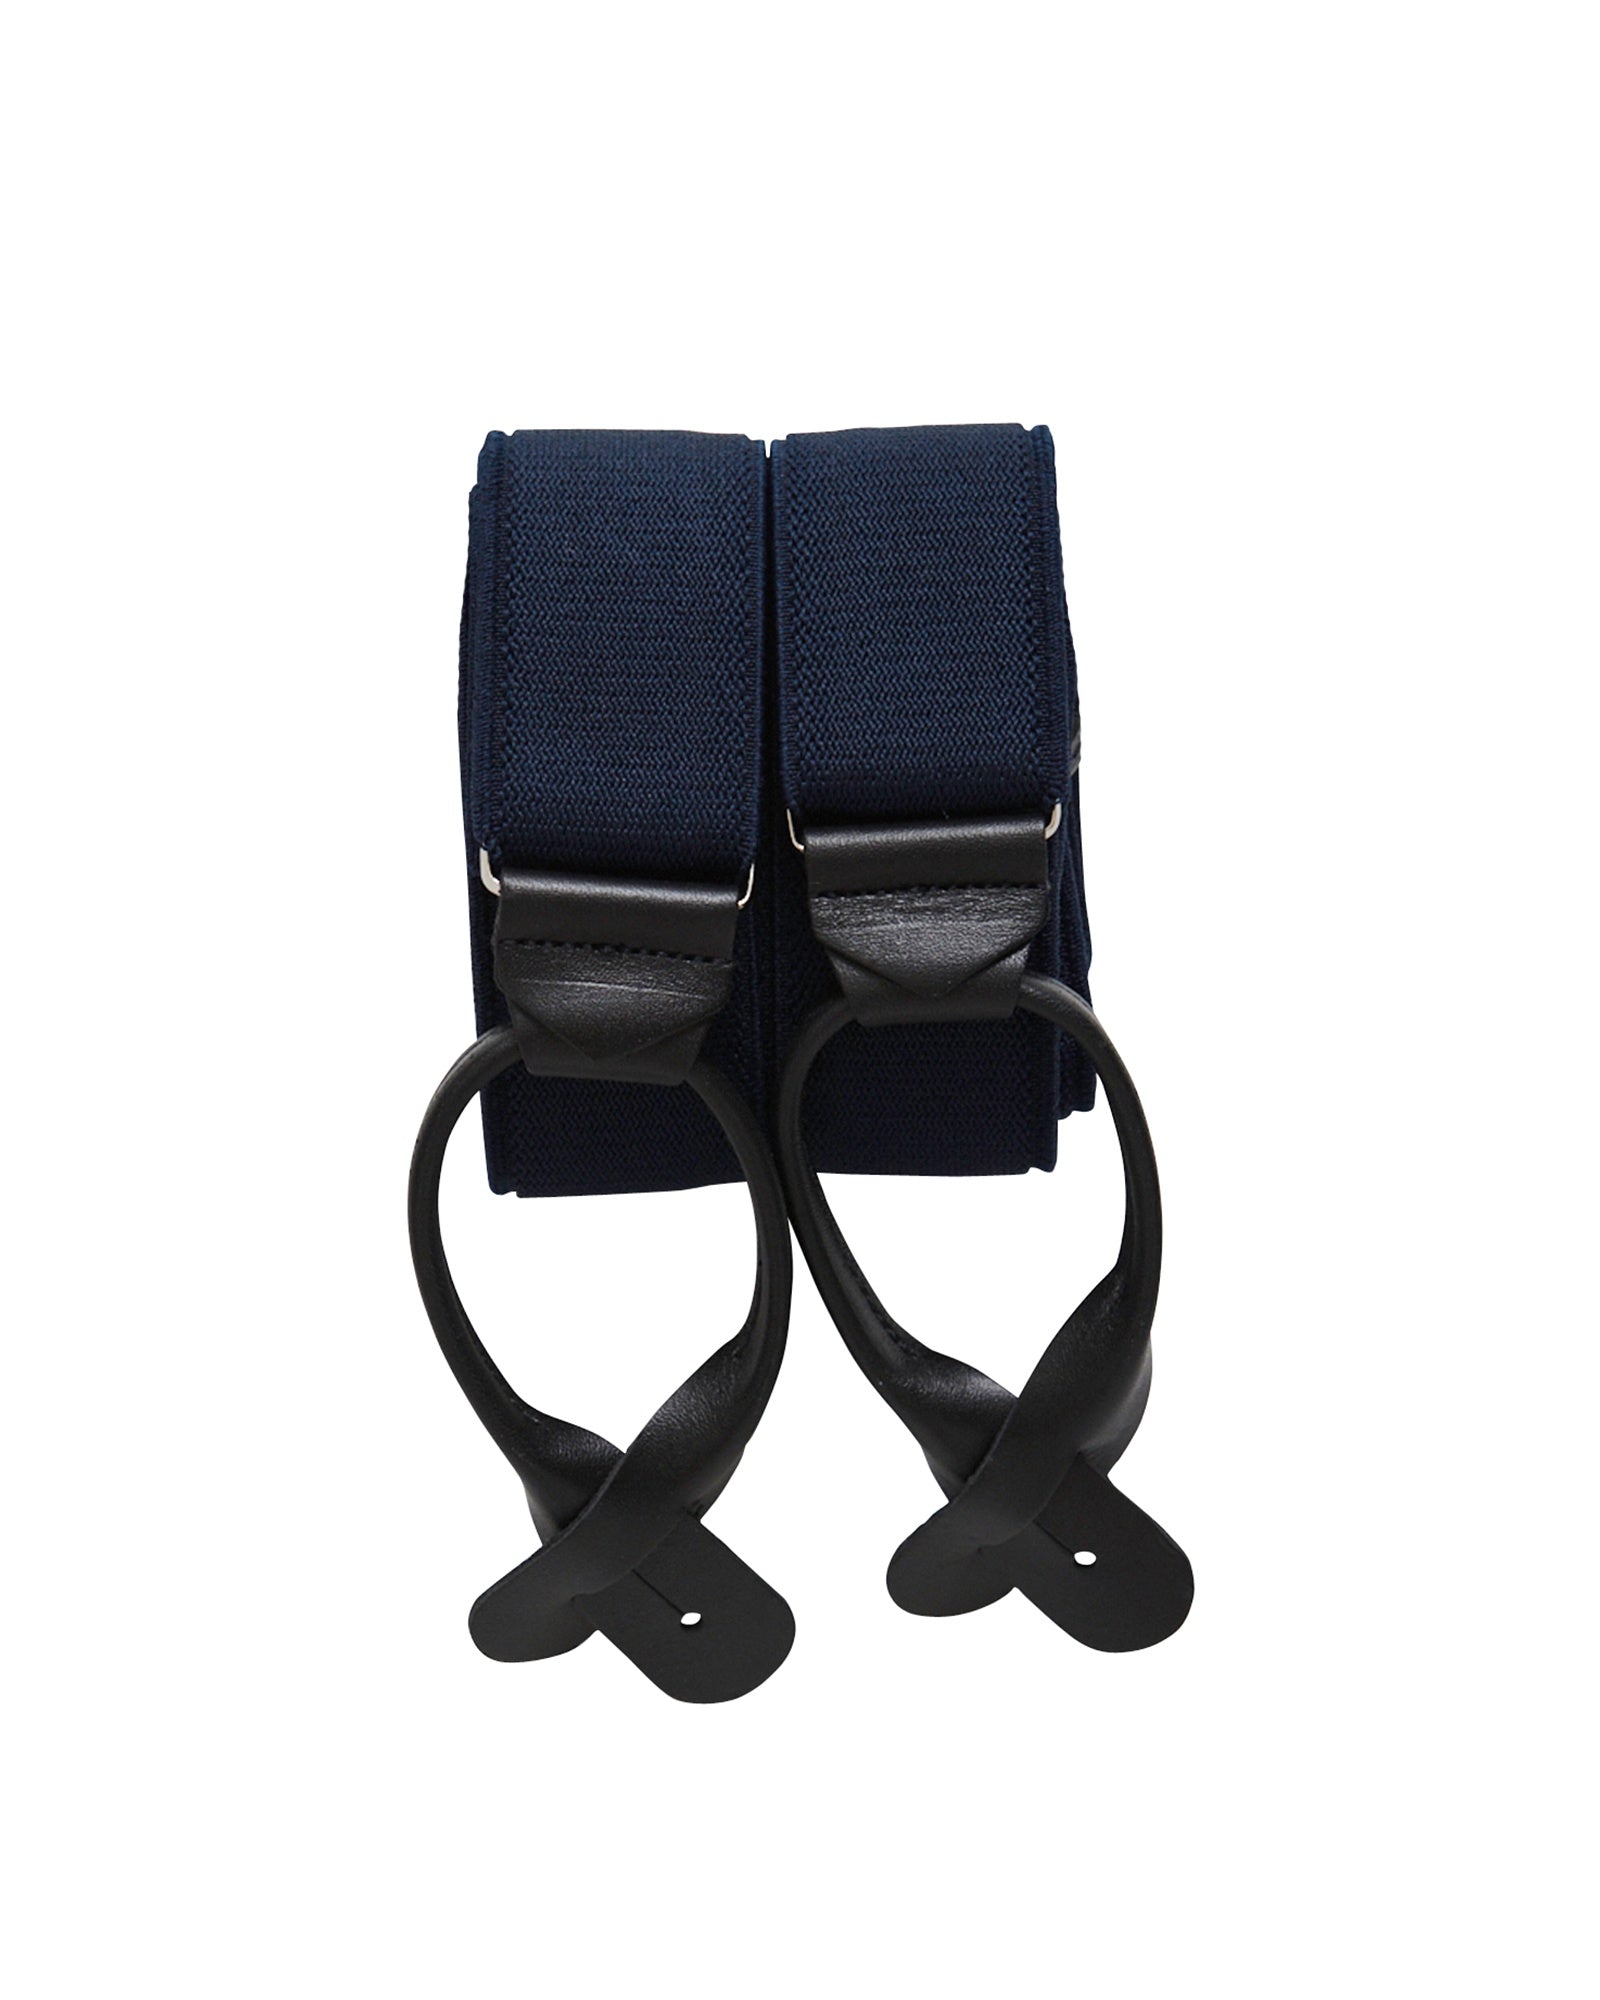 Suspenders - Navy